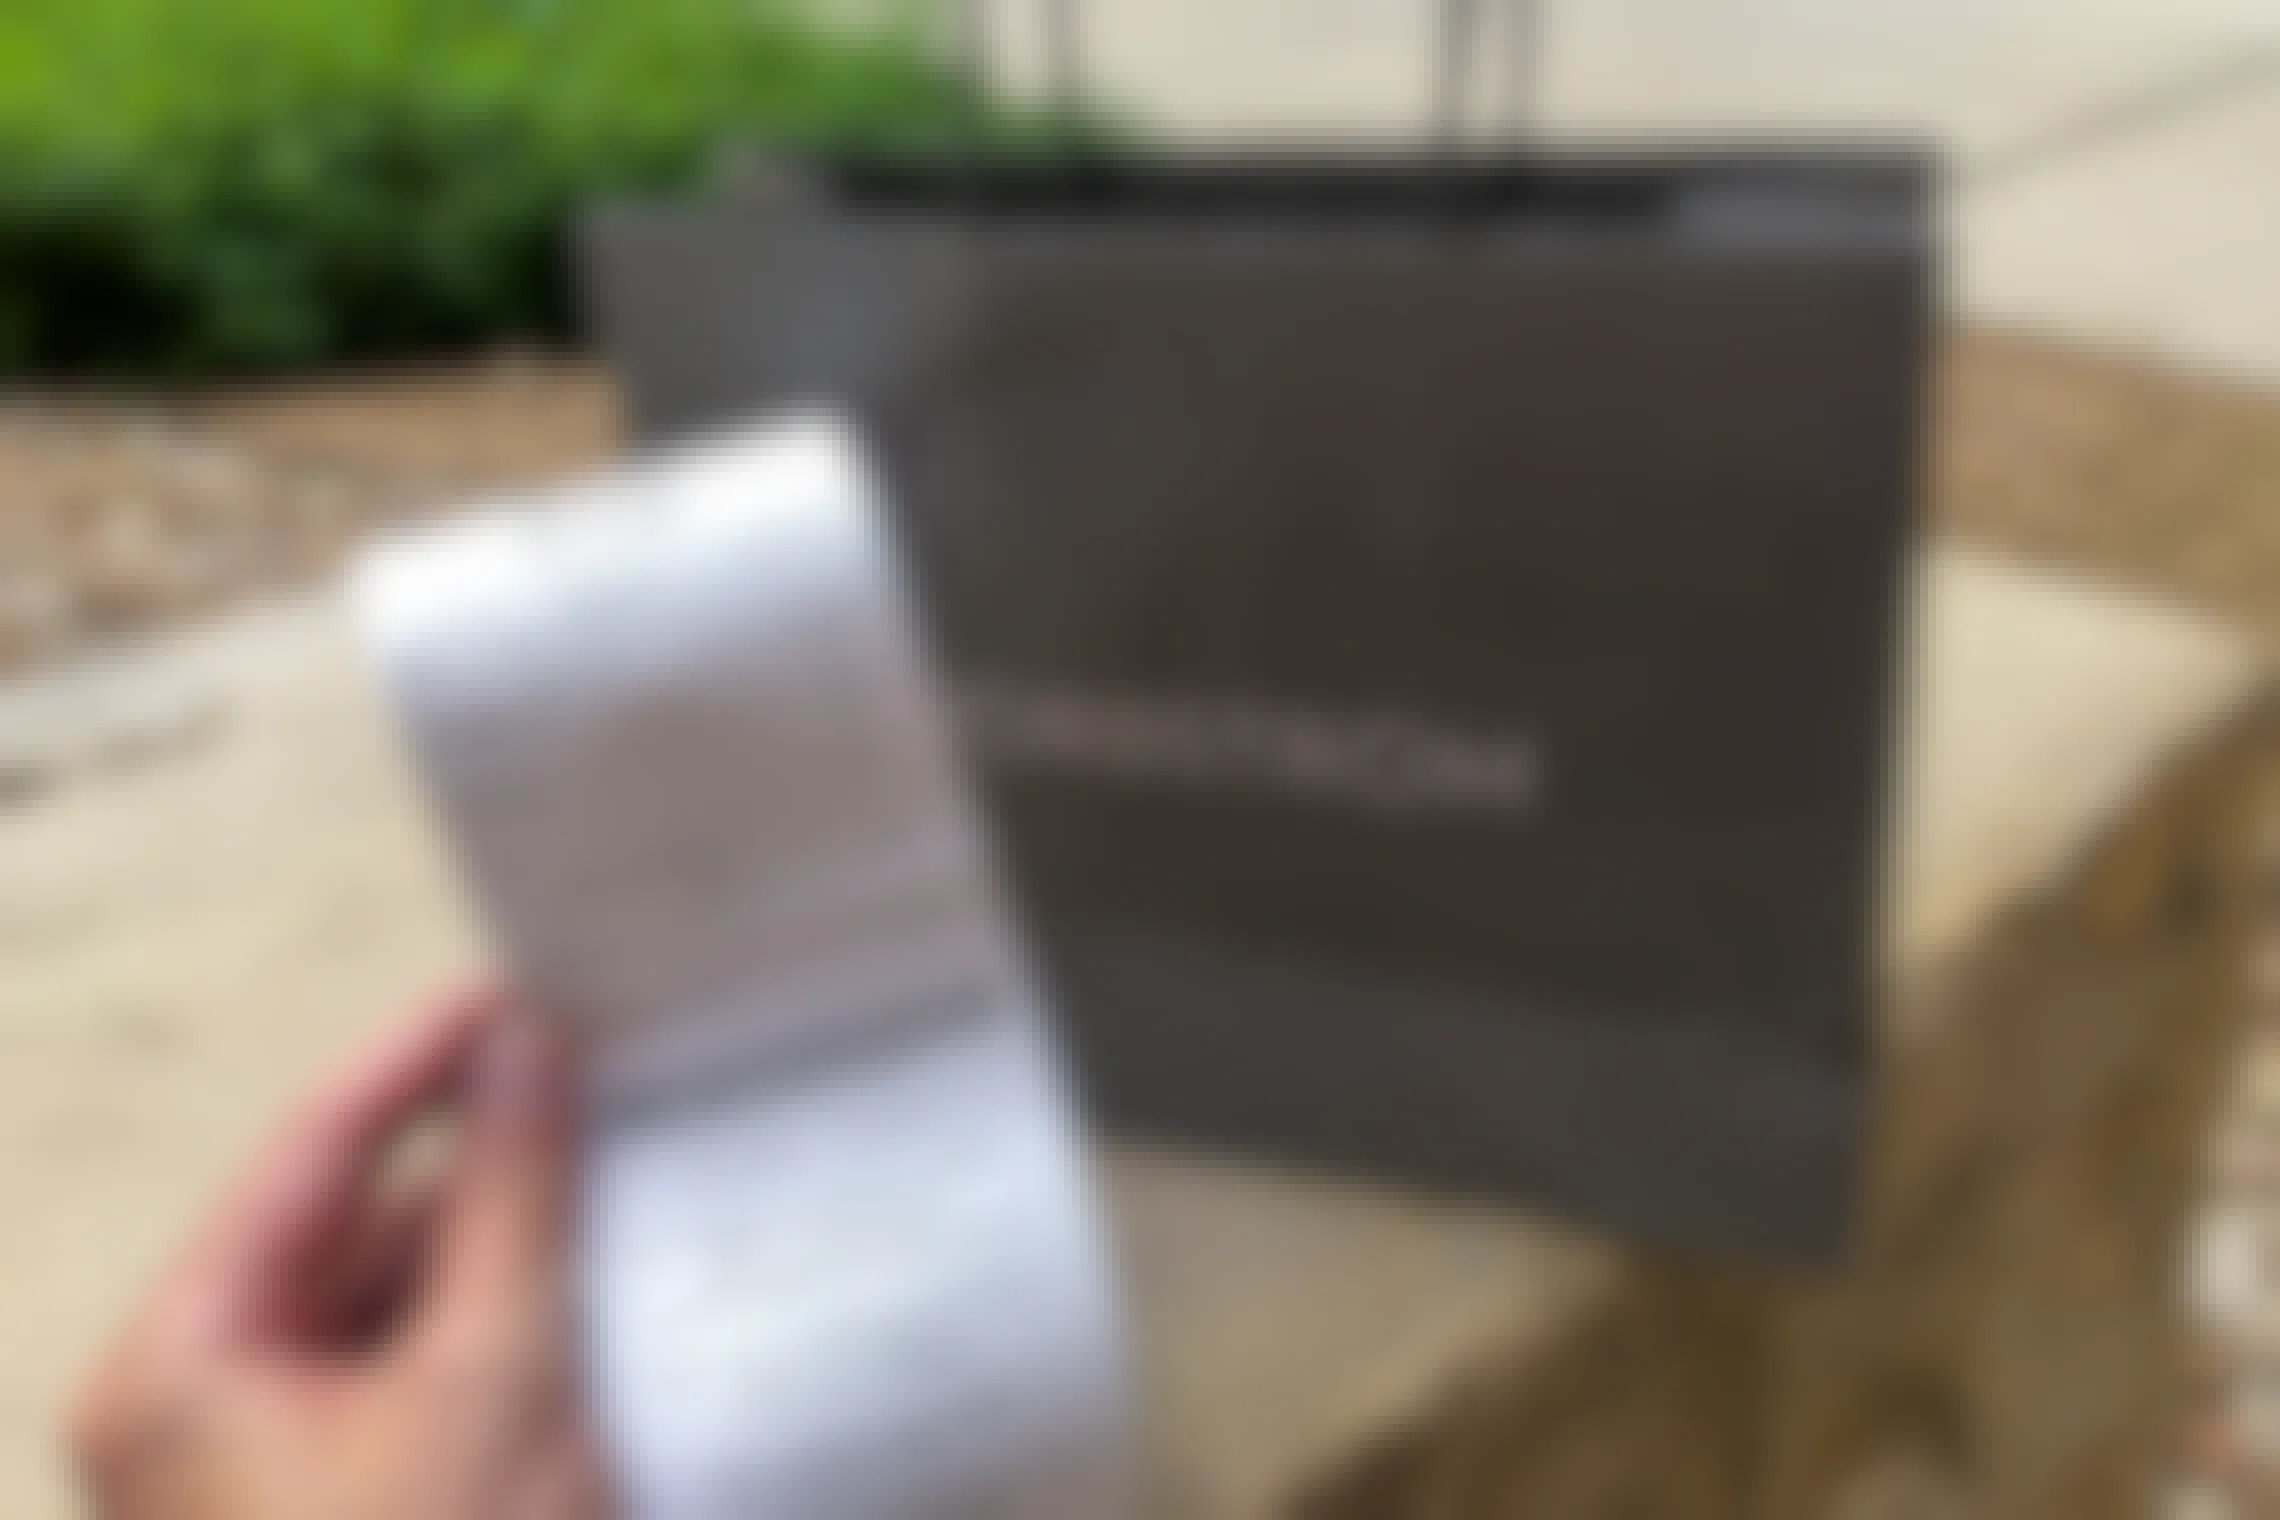 Nordstrom receipt held up in front of bag